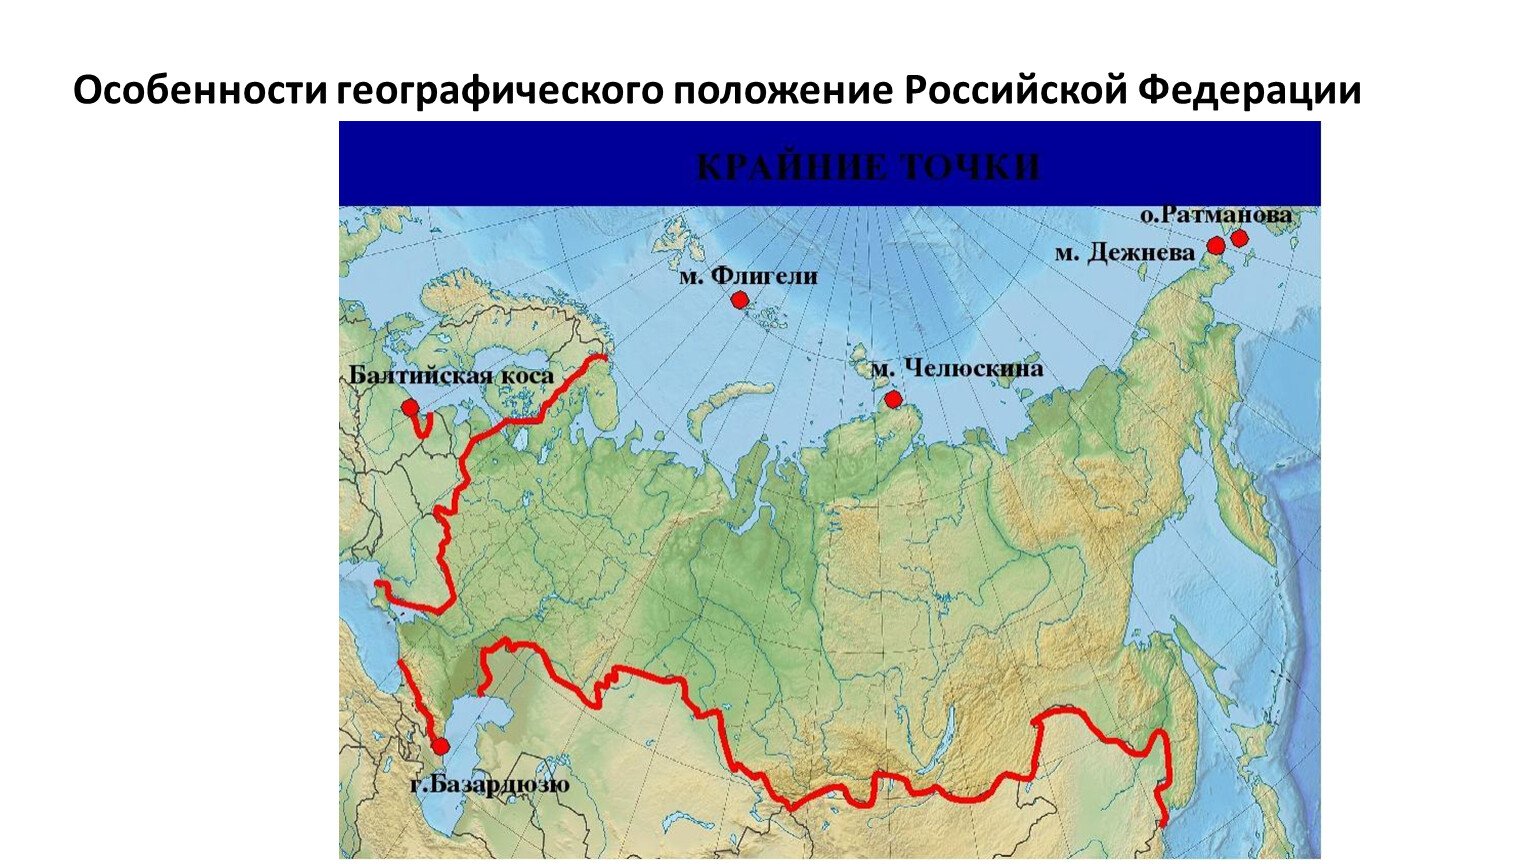 Россия омывается 4 океанами